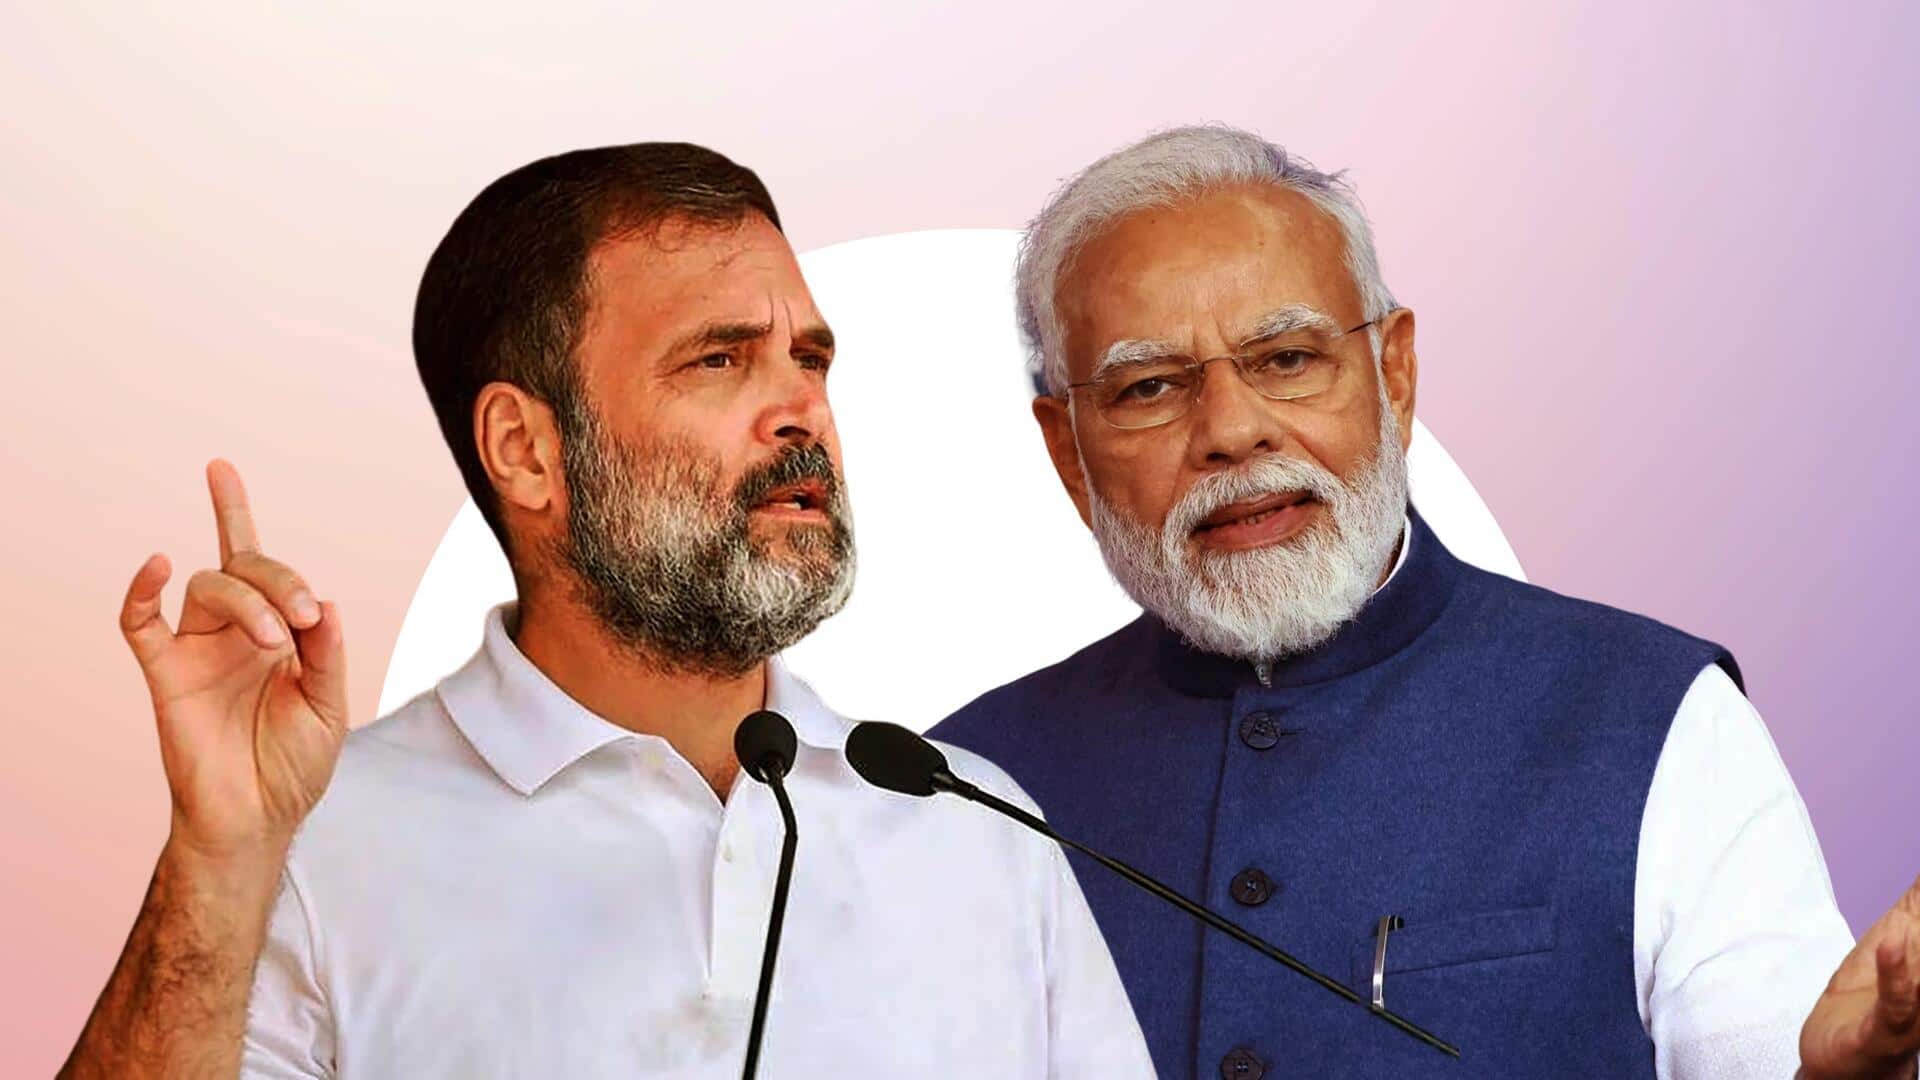 प्रधानमंत्री मोदी को 'पनौती' और 'जेबकतरा' कहने पर राहुल गांधी को चुनाव आयोग का नोटिस 